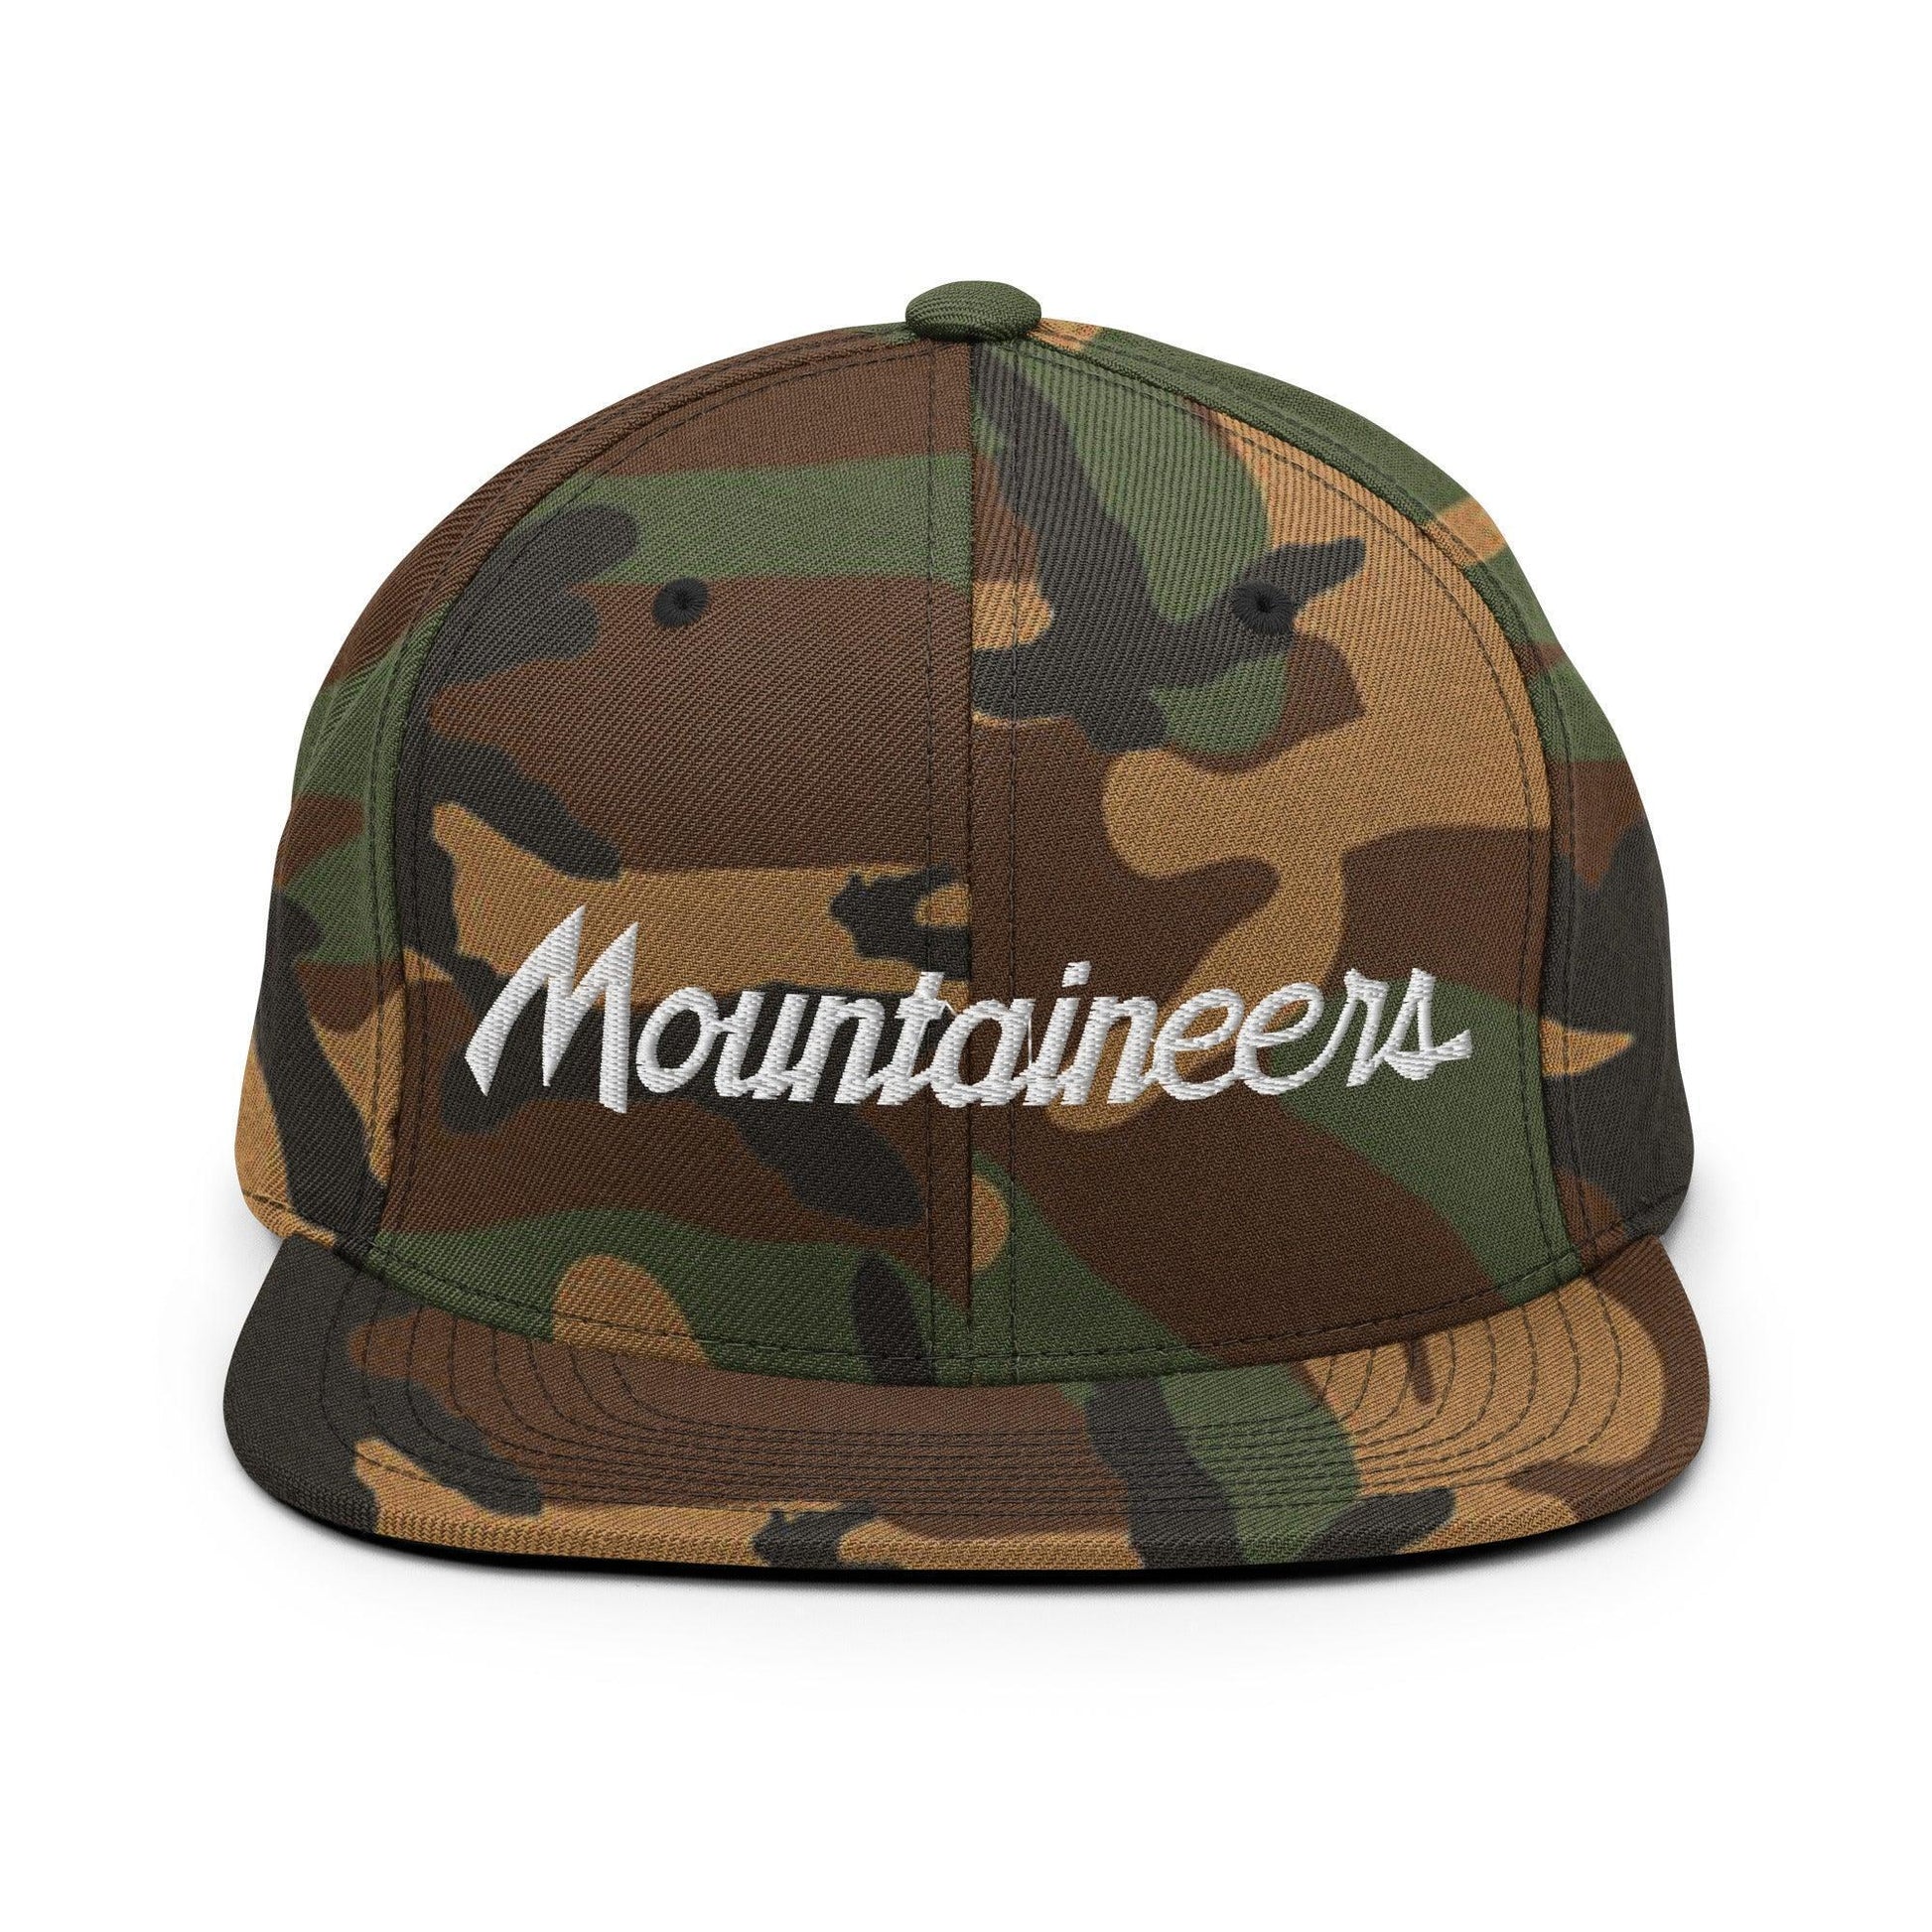 Mountaineers School Mascot Script Snapback Hat Green Camo